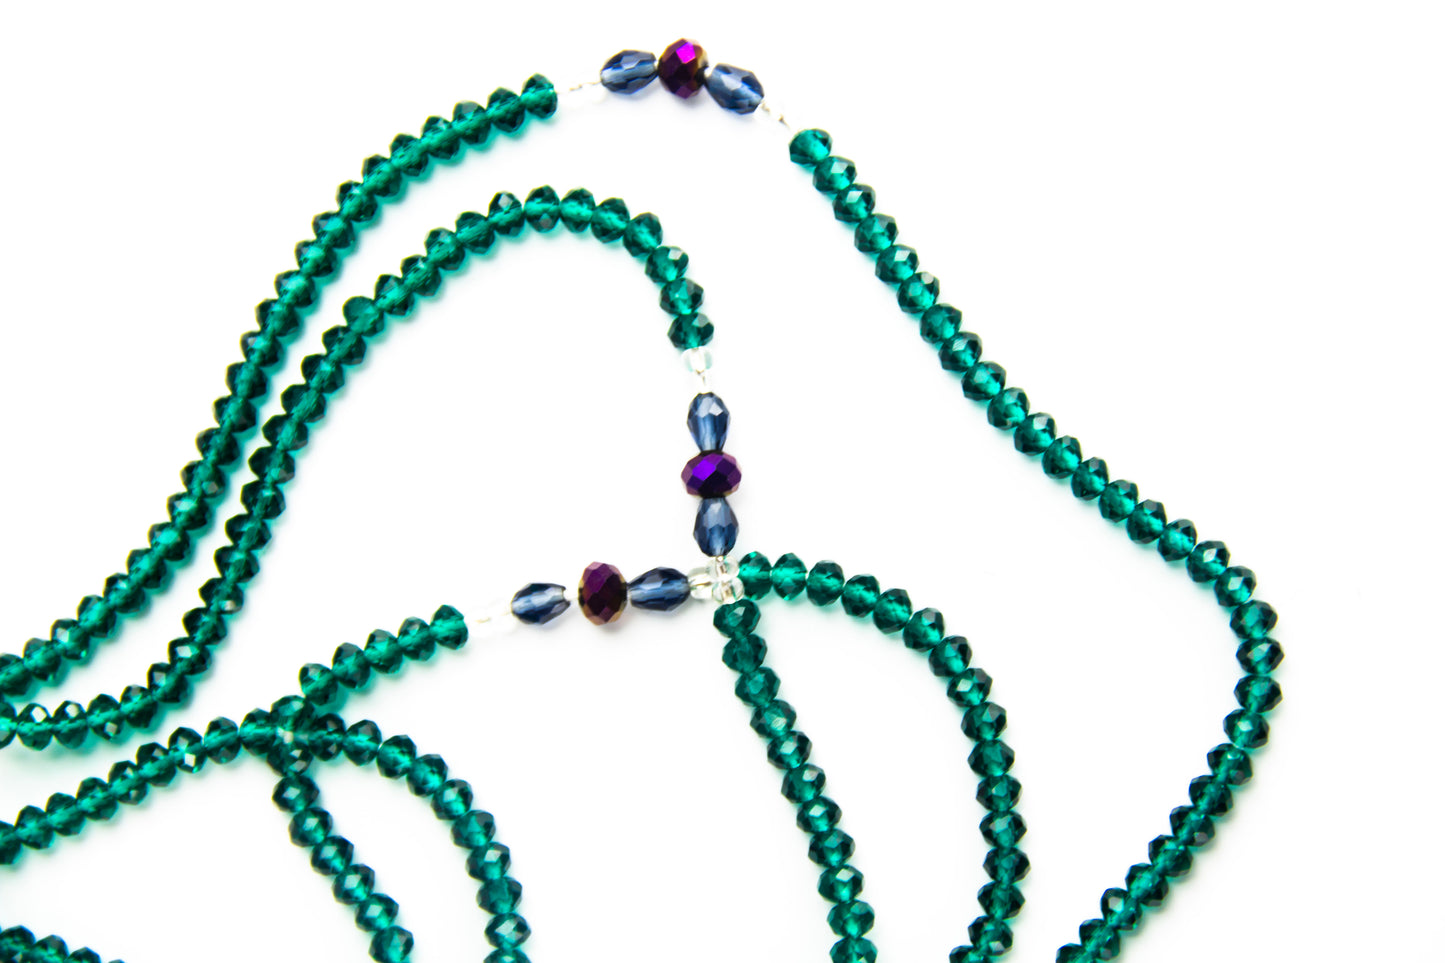 Ocean waist beads